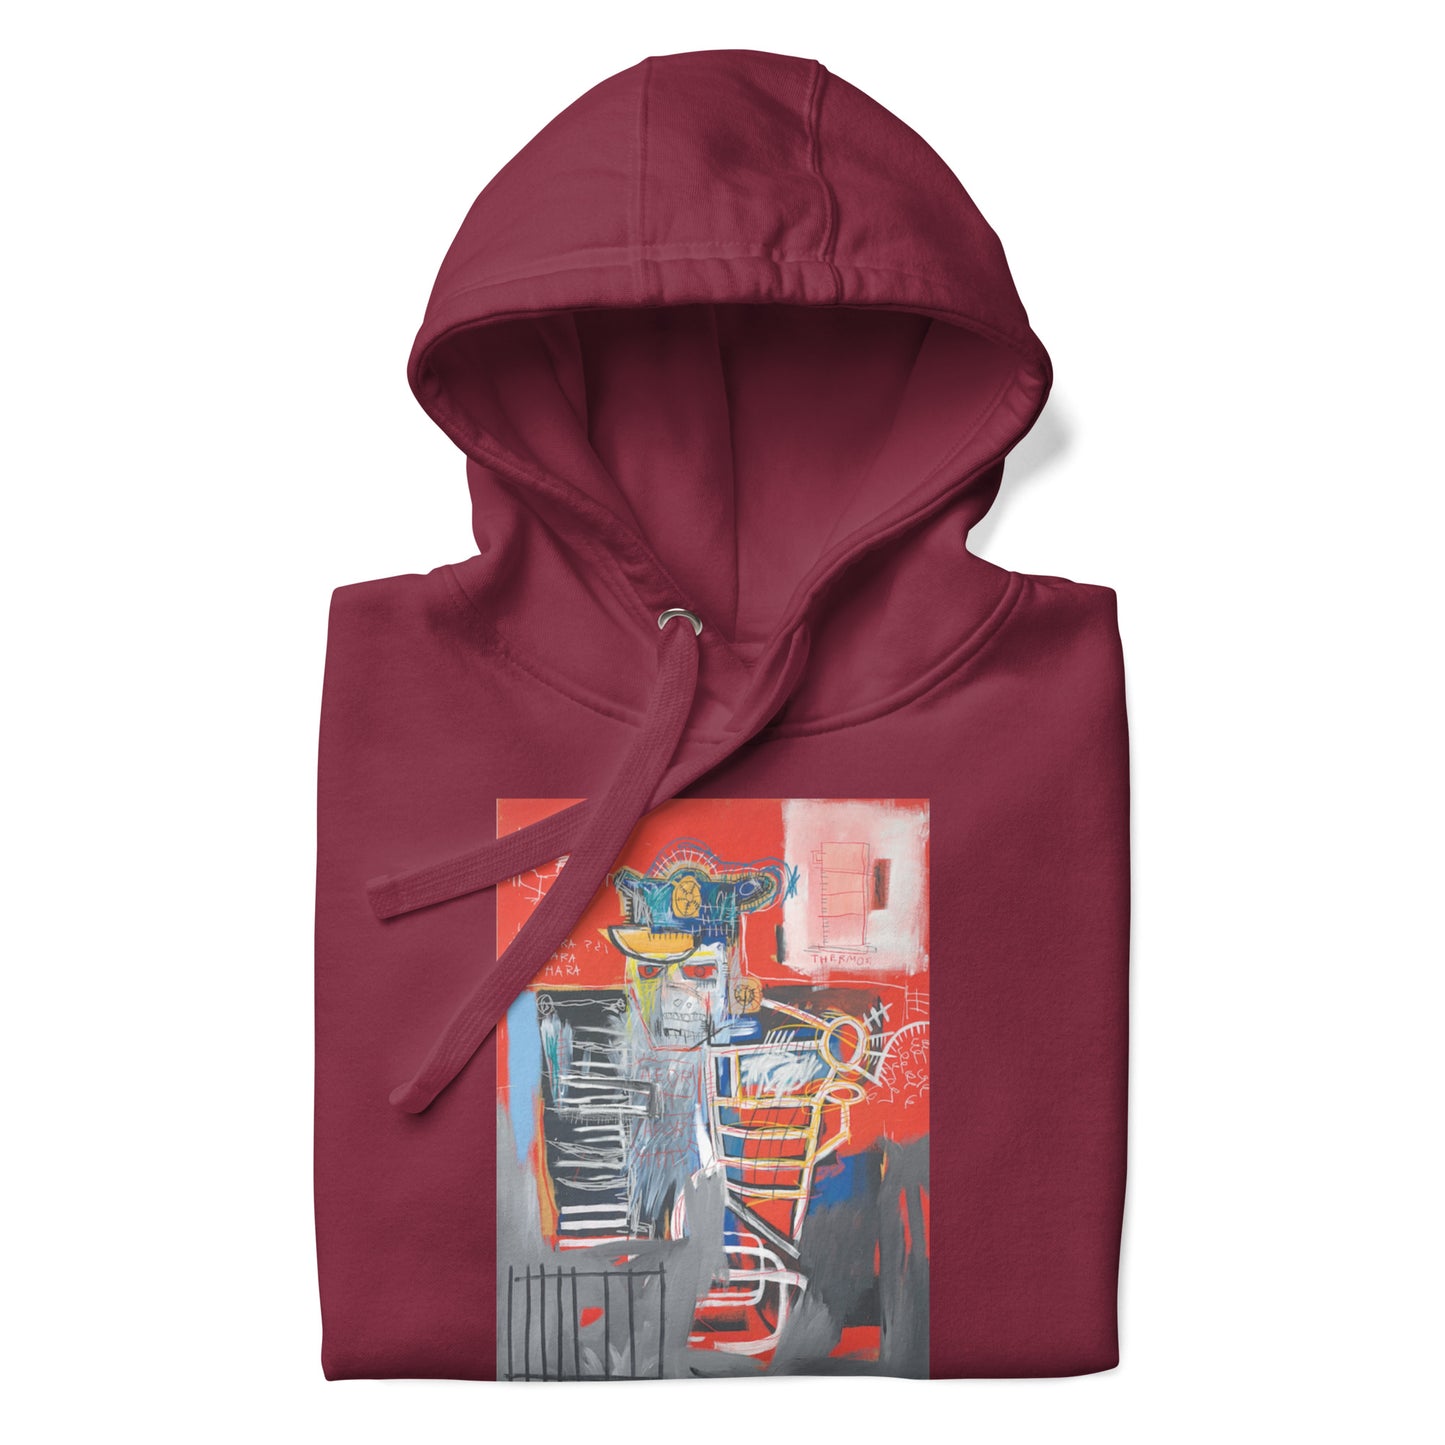 Jean-Michel Basquiat "La Hara" Artwork Printed Premium Streetwear Sweatshirt Hoodie Burgundy Red